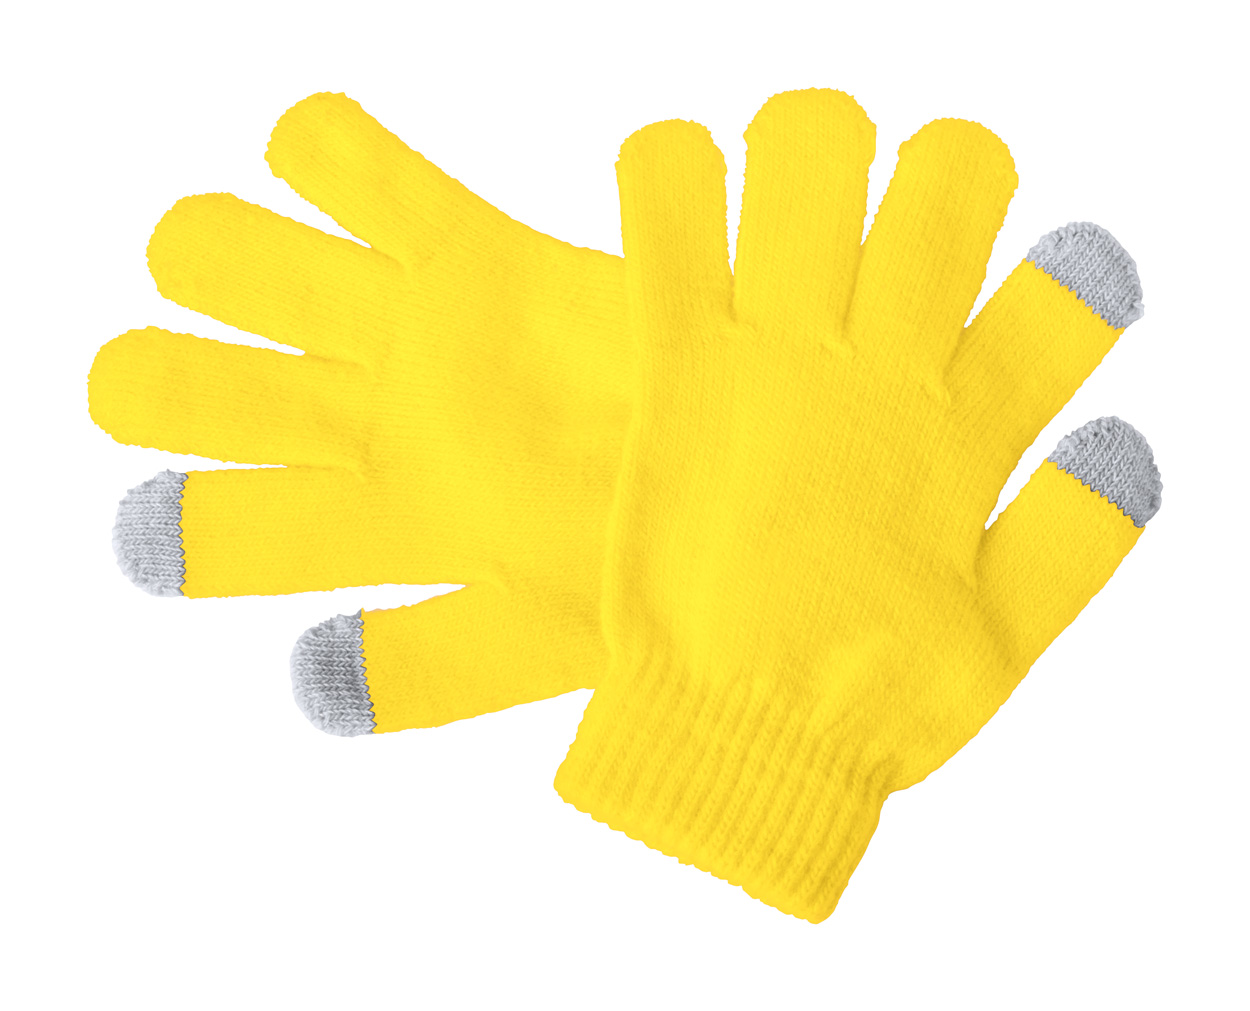 Pigun gants tactiles pour enfants